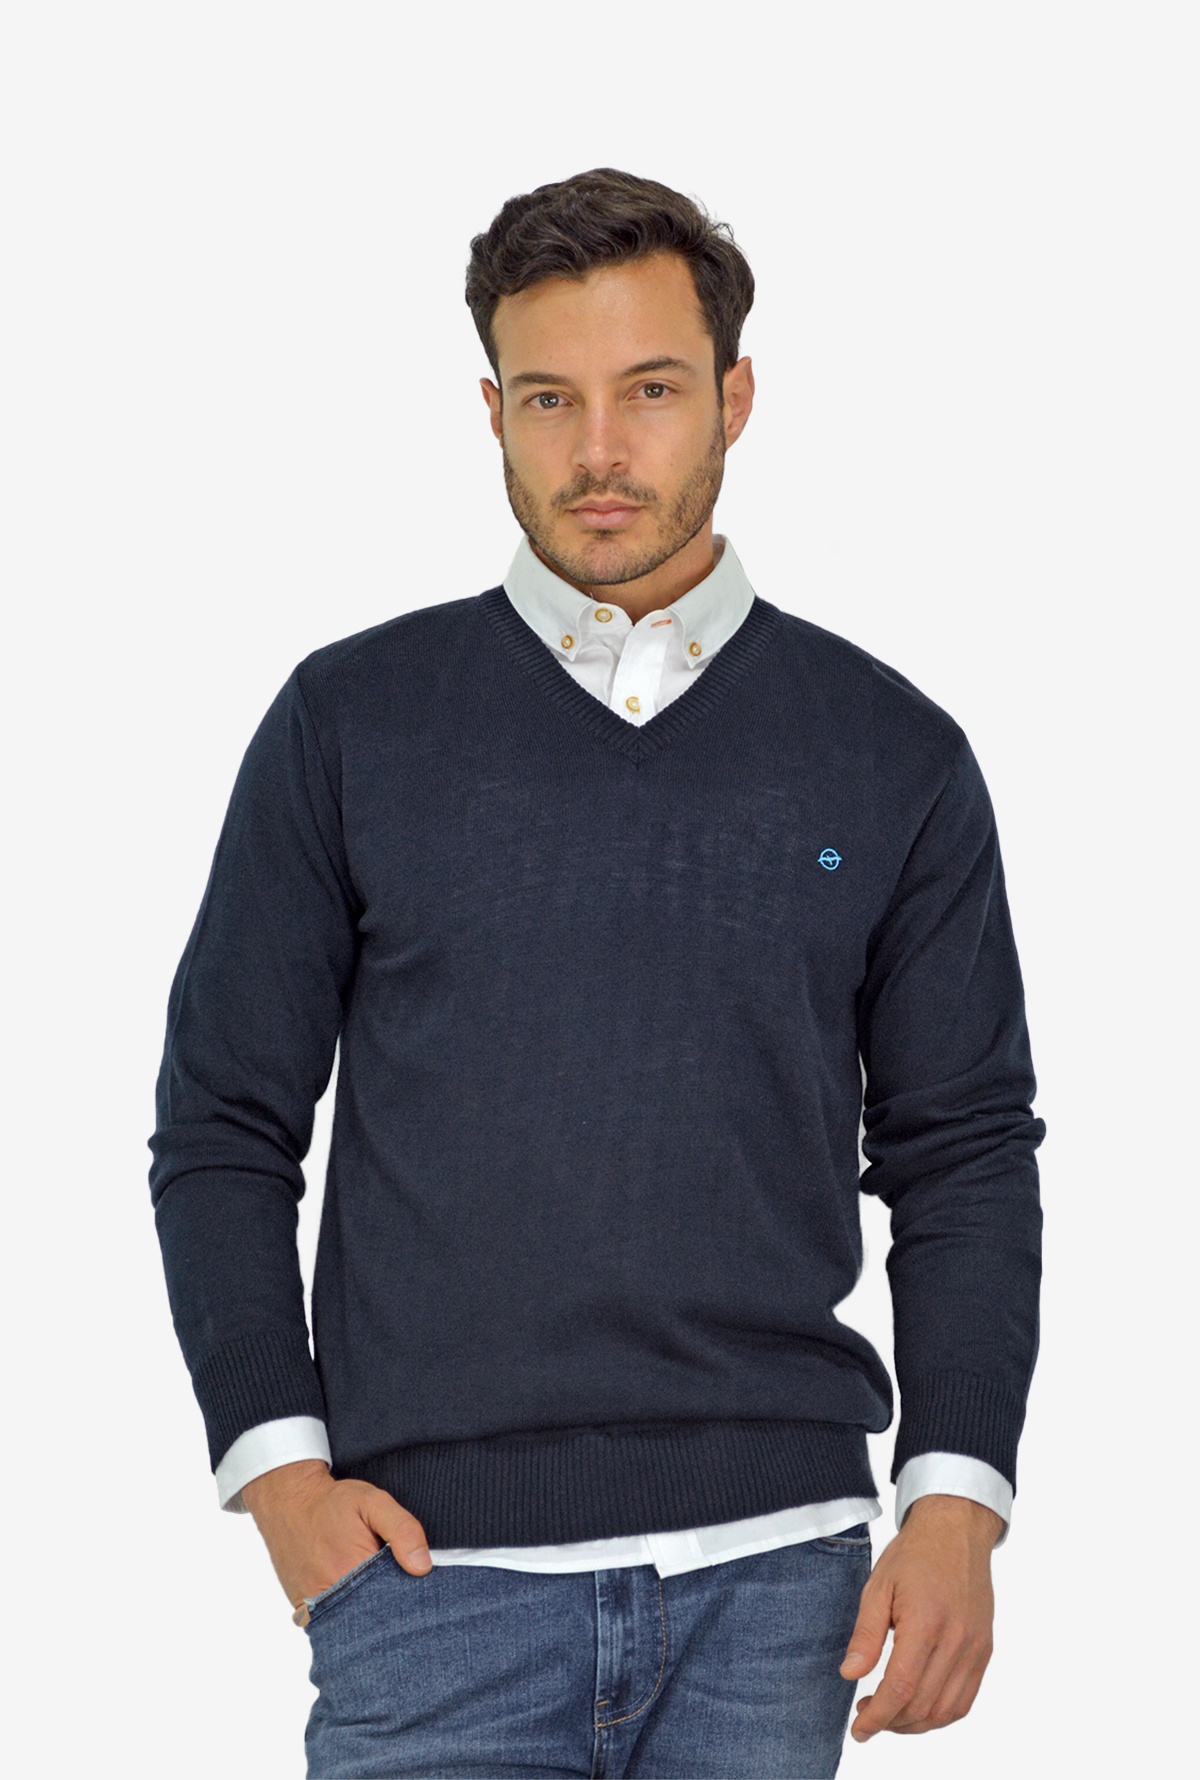 Sweater Azul Oscuro  básico cuello V, para hombre DMST07